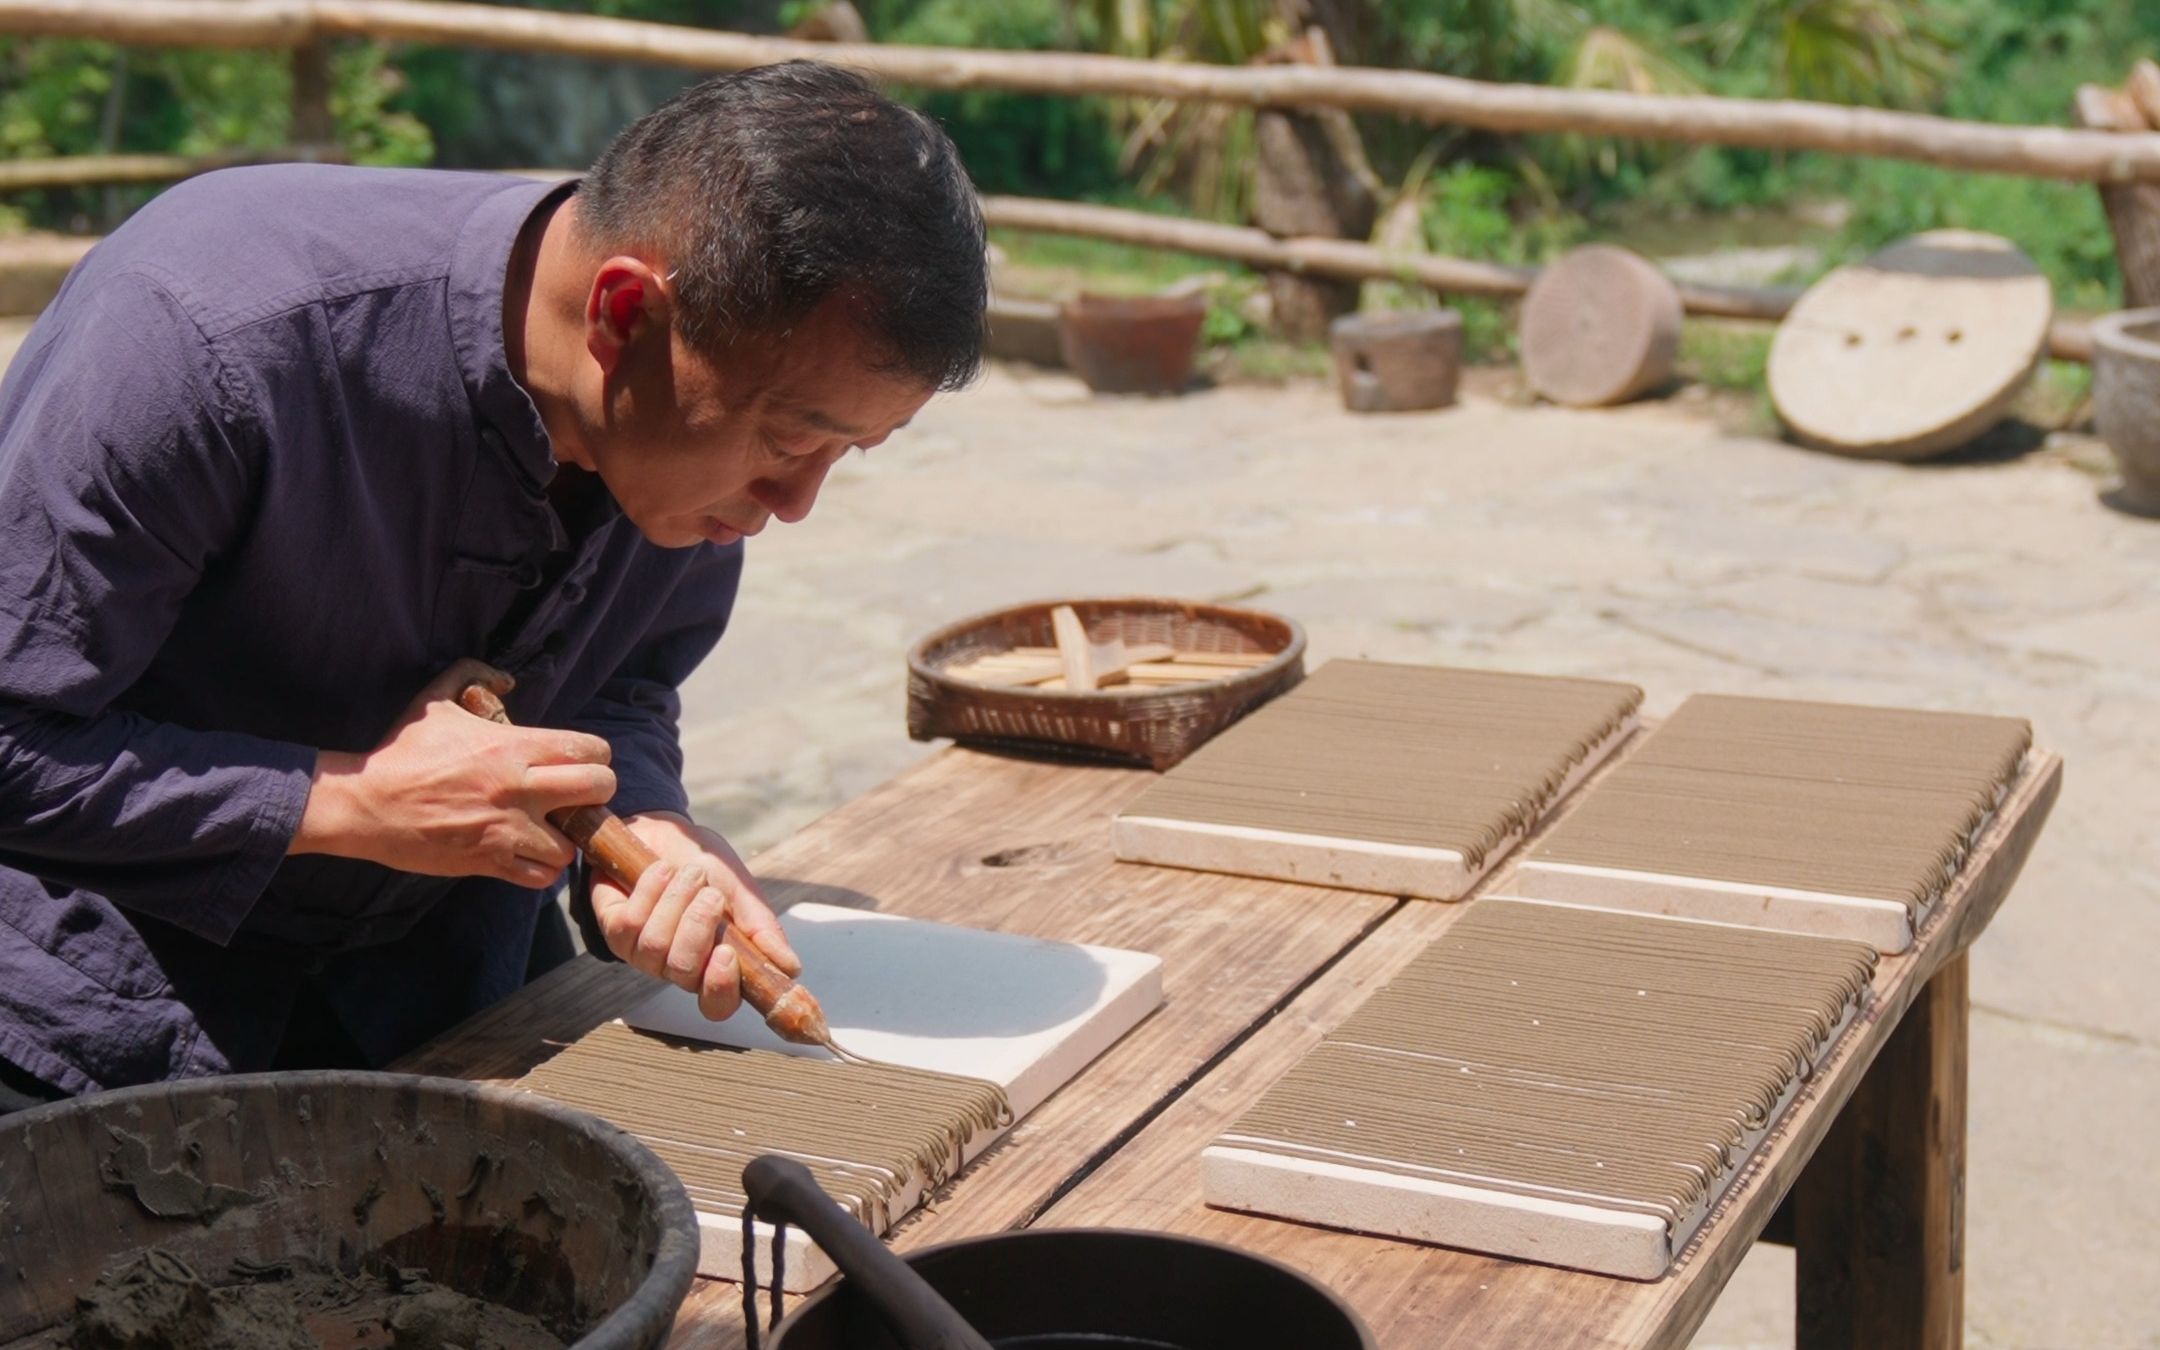 扎染工艺，是传统的手工染色技艺之一，在我国有着1500多年的历史。-彭南科-彭南科-哔哩哔哩视频